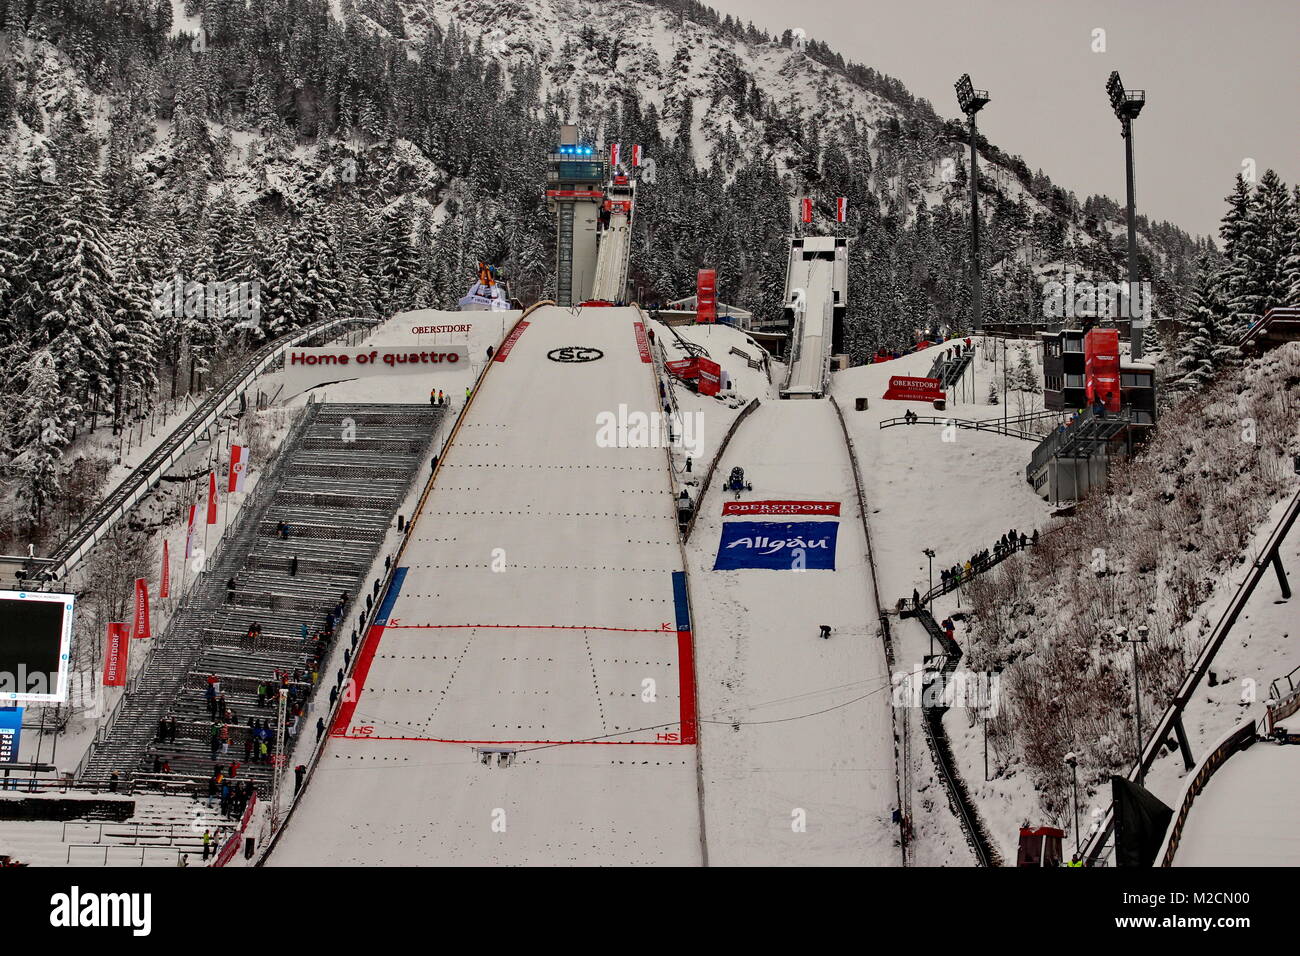 Die Erdinger Arena mit der Skisprungschanze am Schattenberg - Austragungsort der Qualifikation für 63. Vierschanzentournee Auftaktspringen Oberstdorf Stock Photo